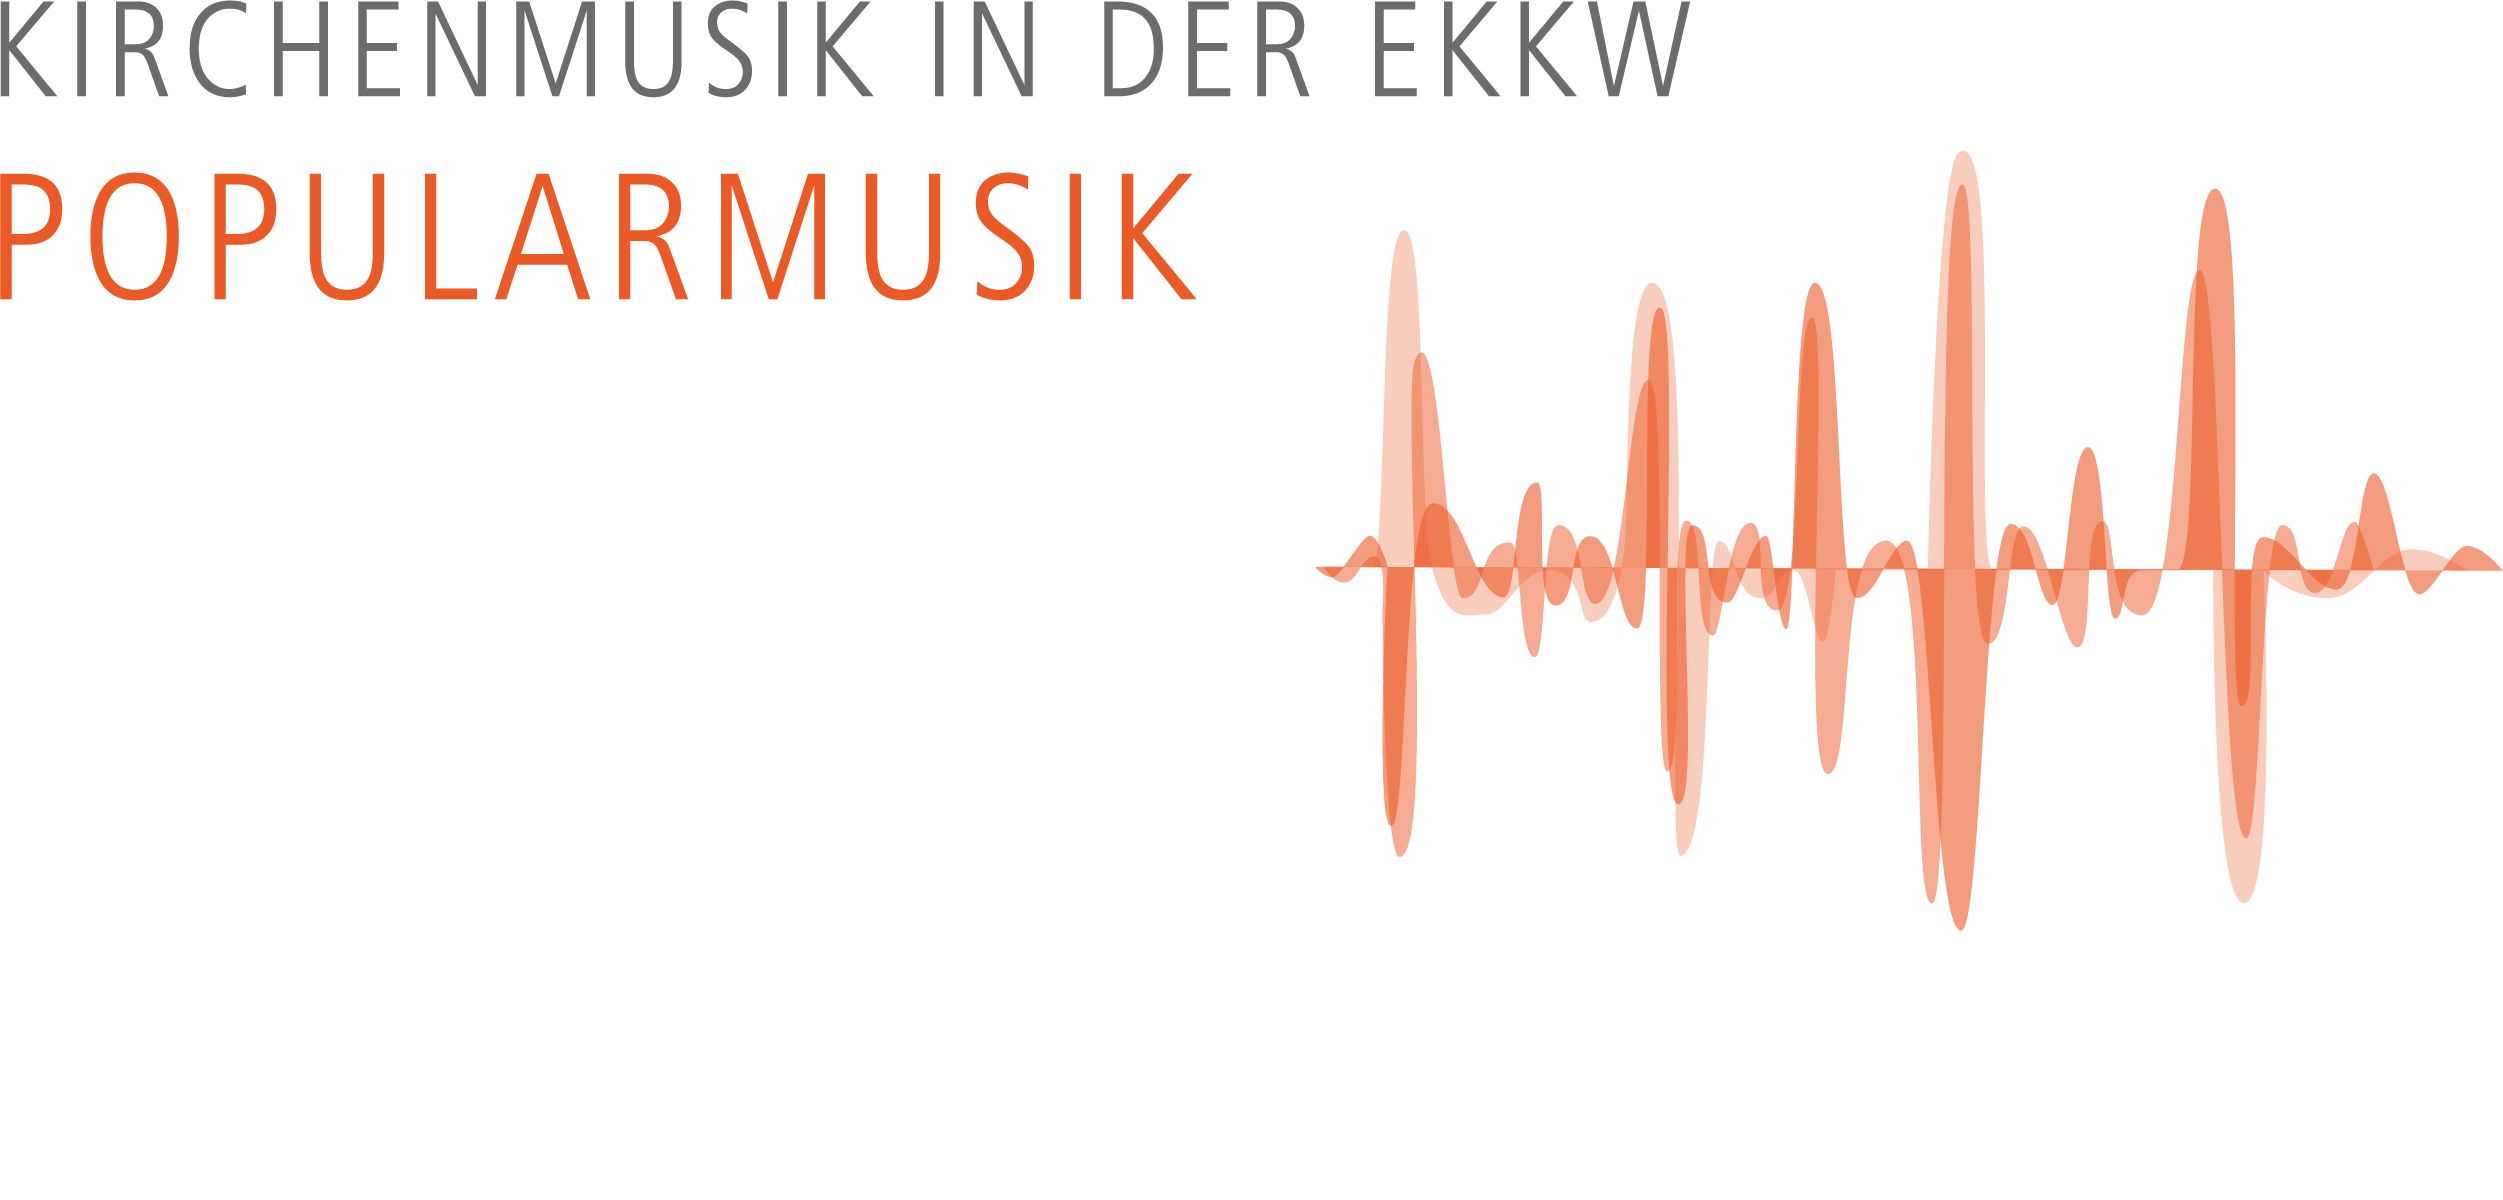 Fachbereich Popularmusik der EKKW